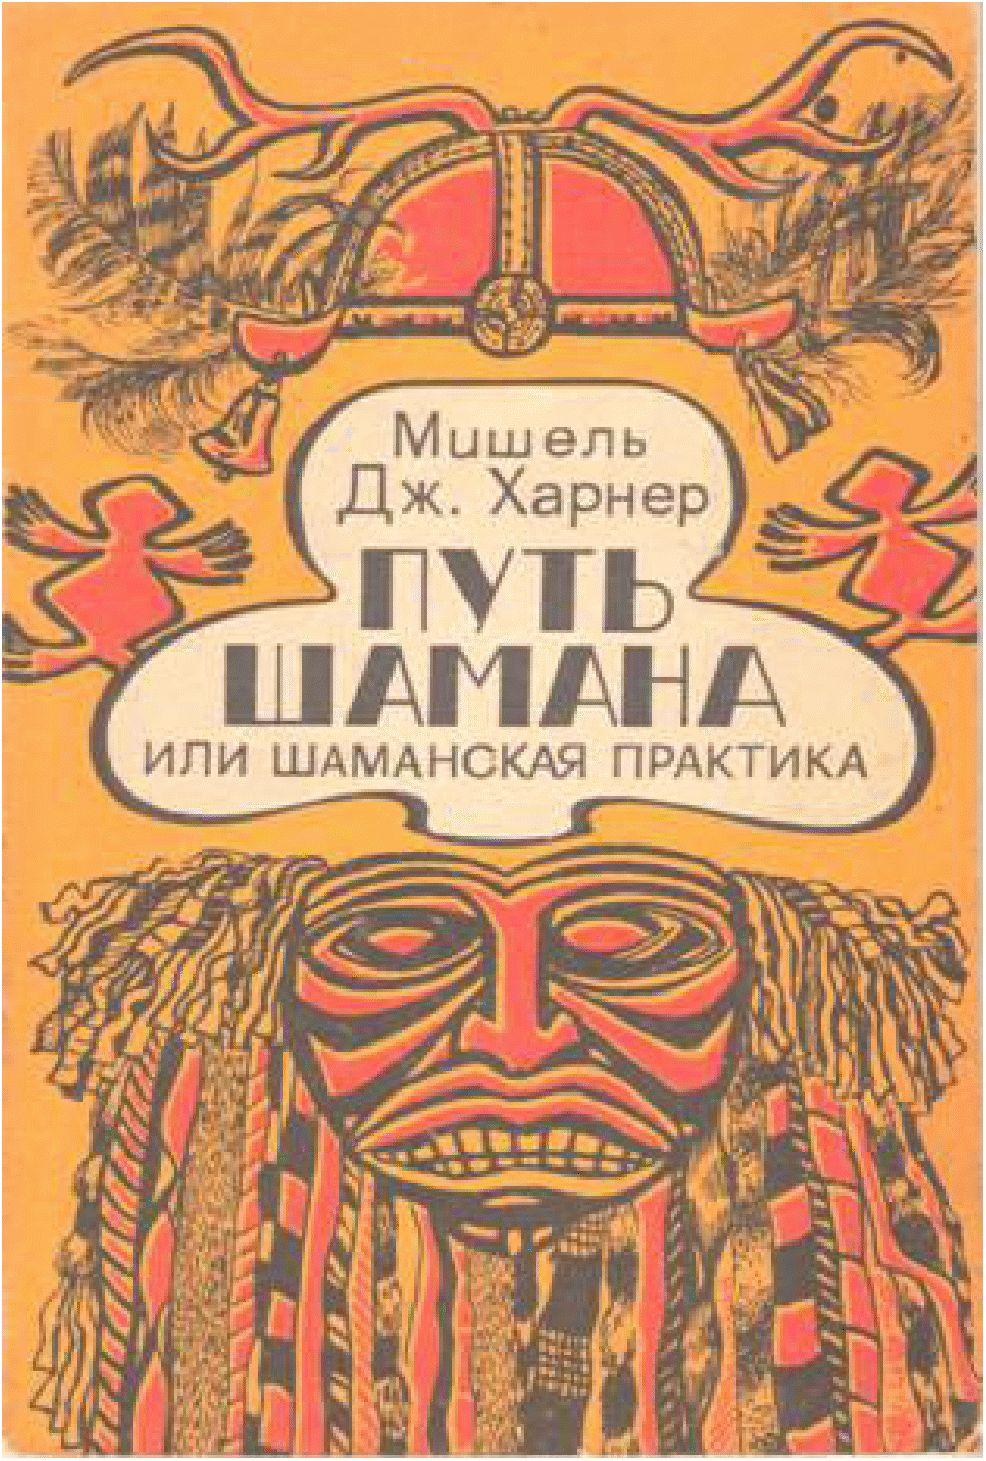 Книга майкл харнер путь шамана оберег новосибирск славянские